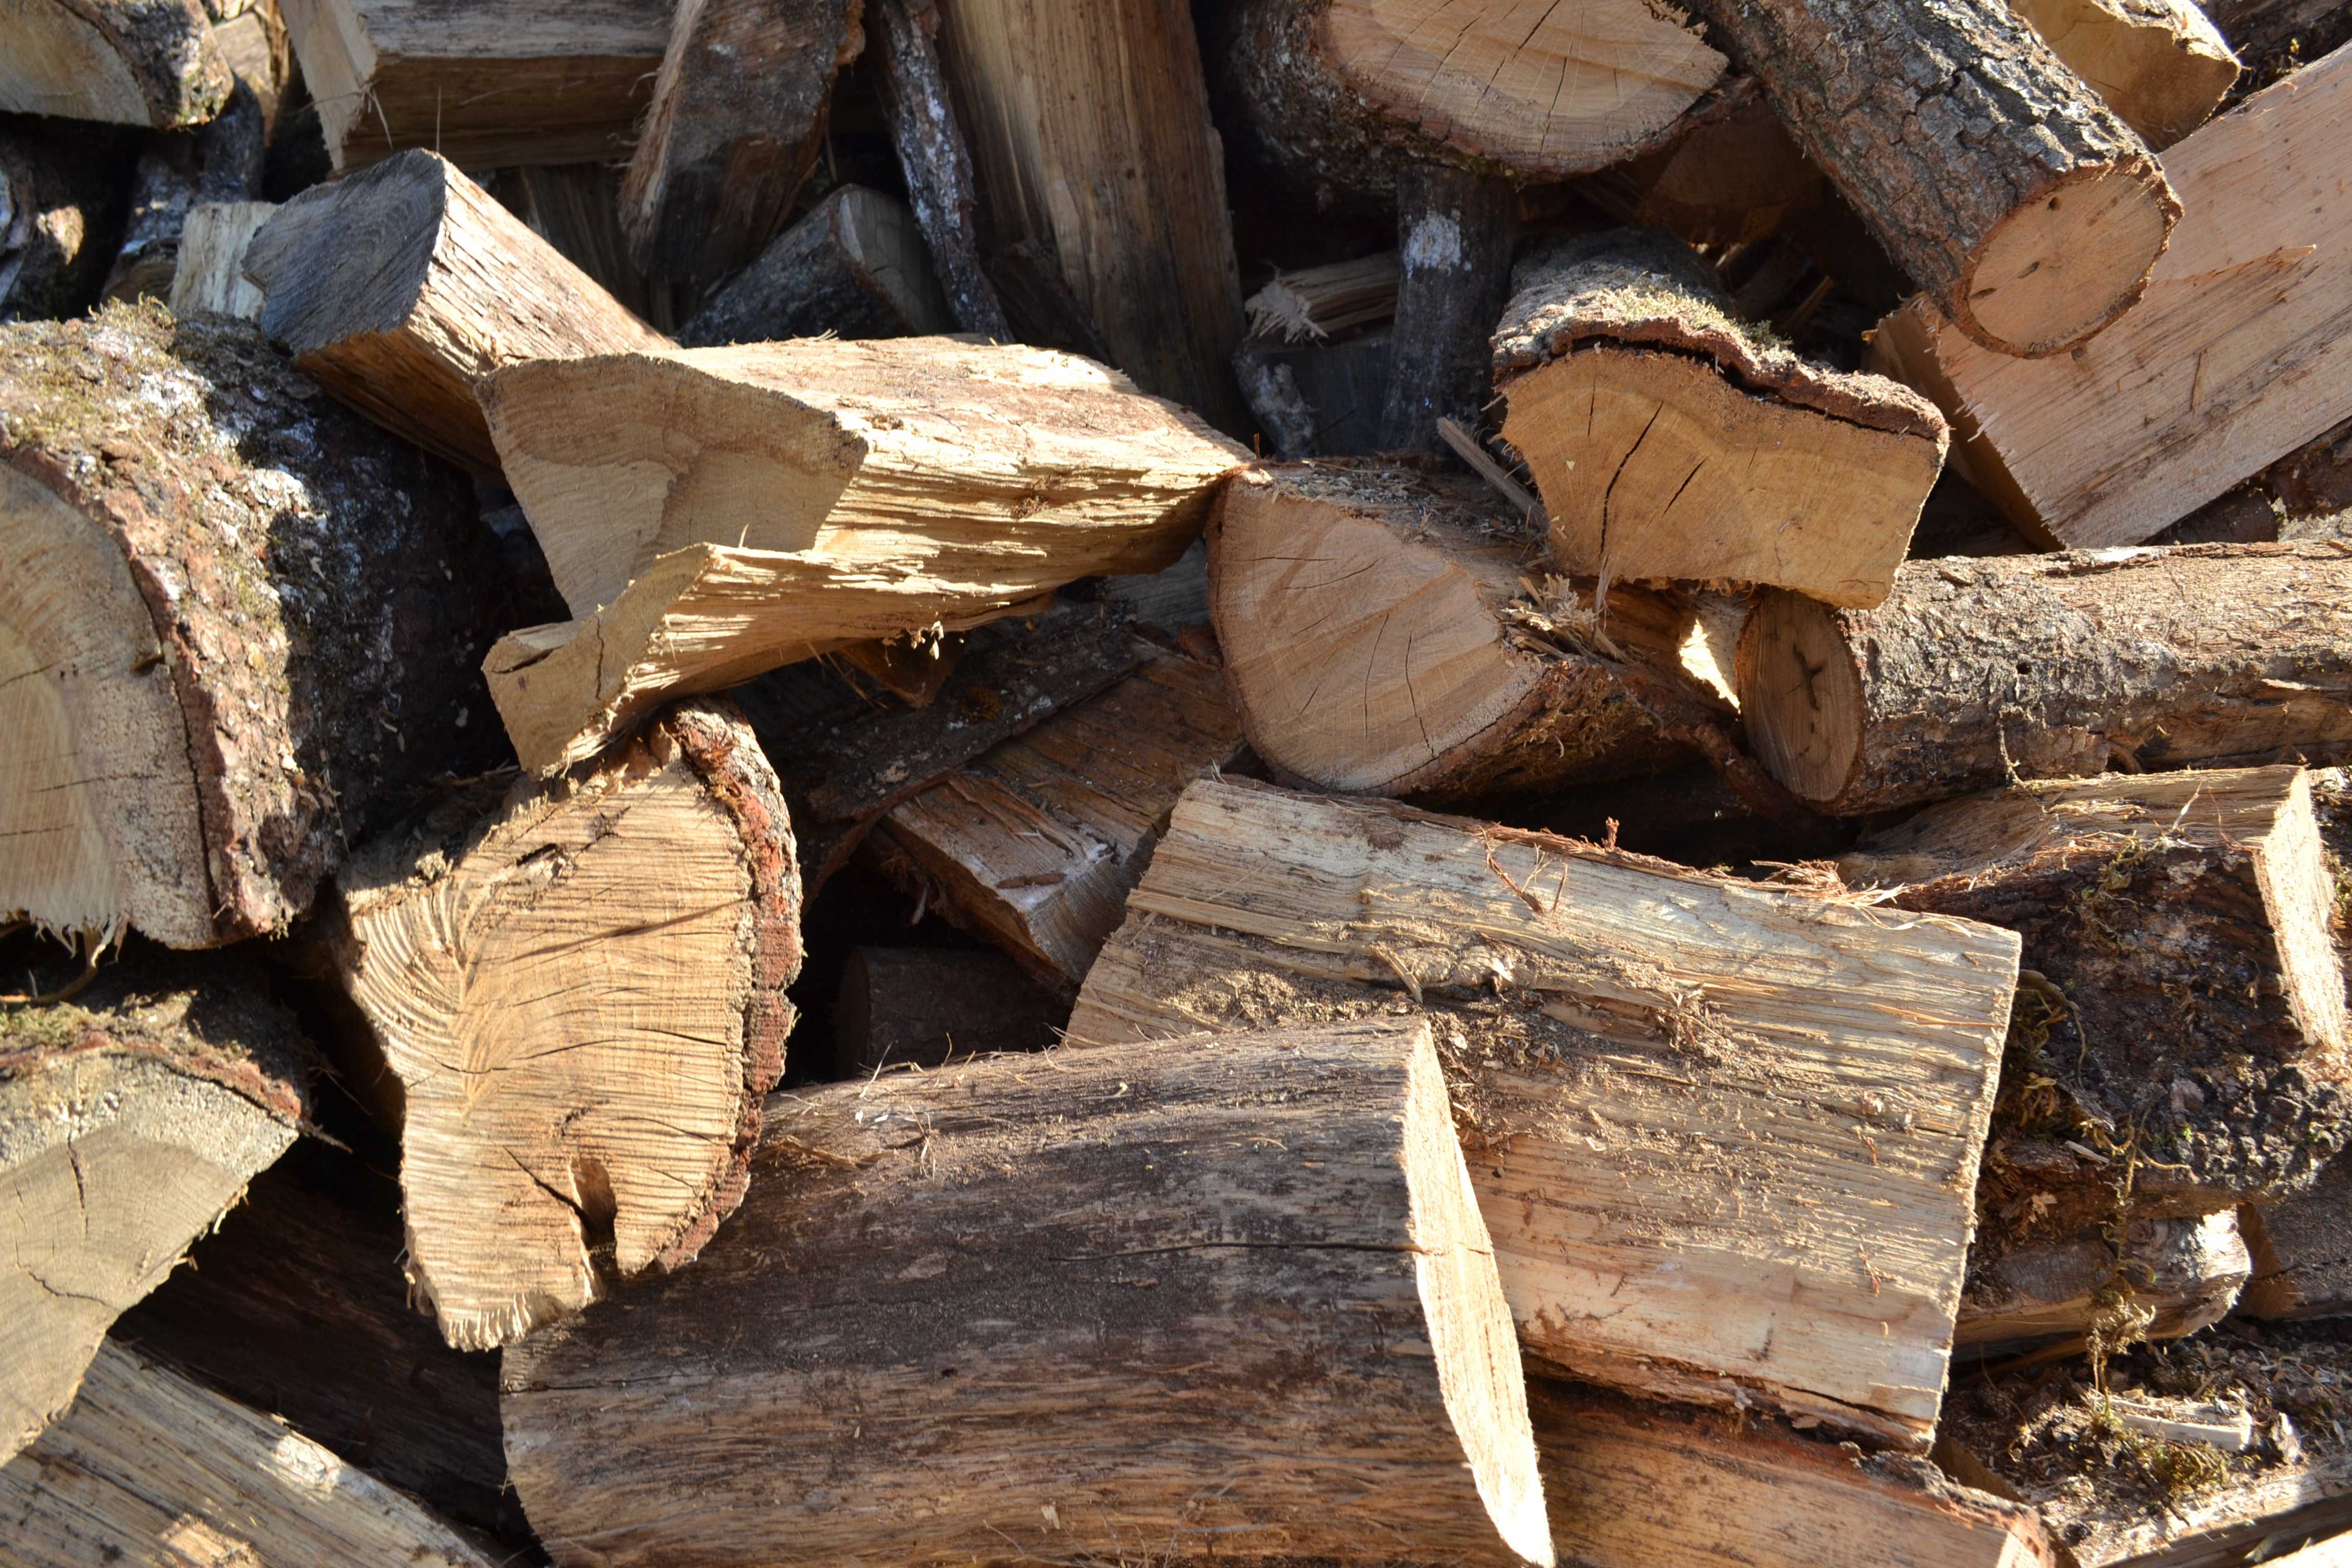 Все дрова для прогрева бани на две большие категории: хвойные и лиственные. У каждой из них свои преимущества и особенности.